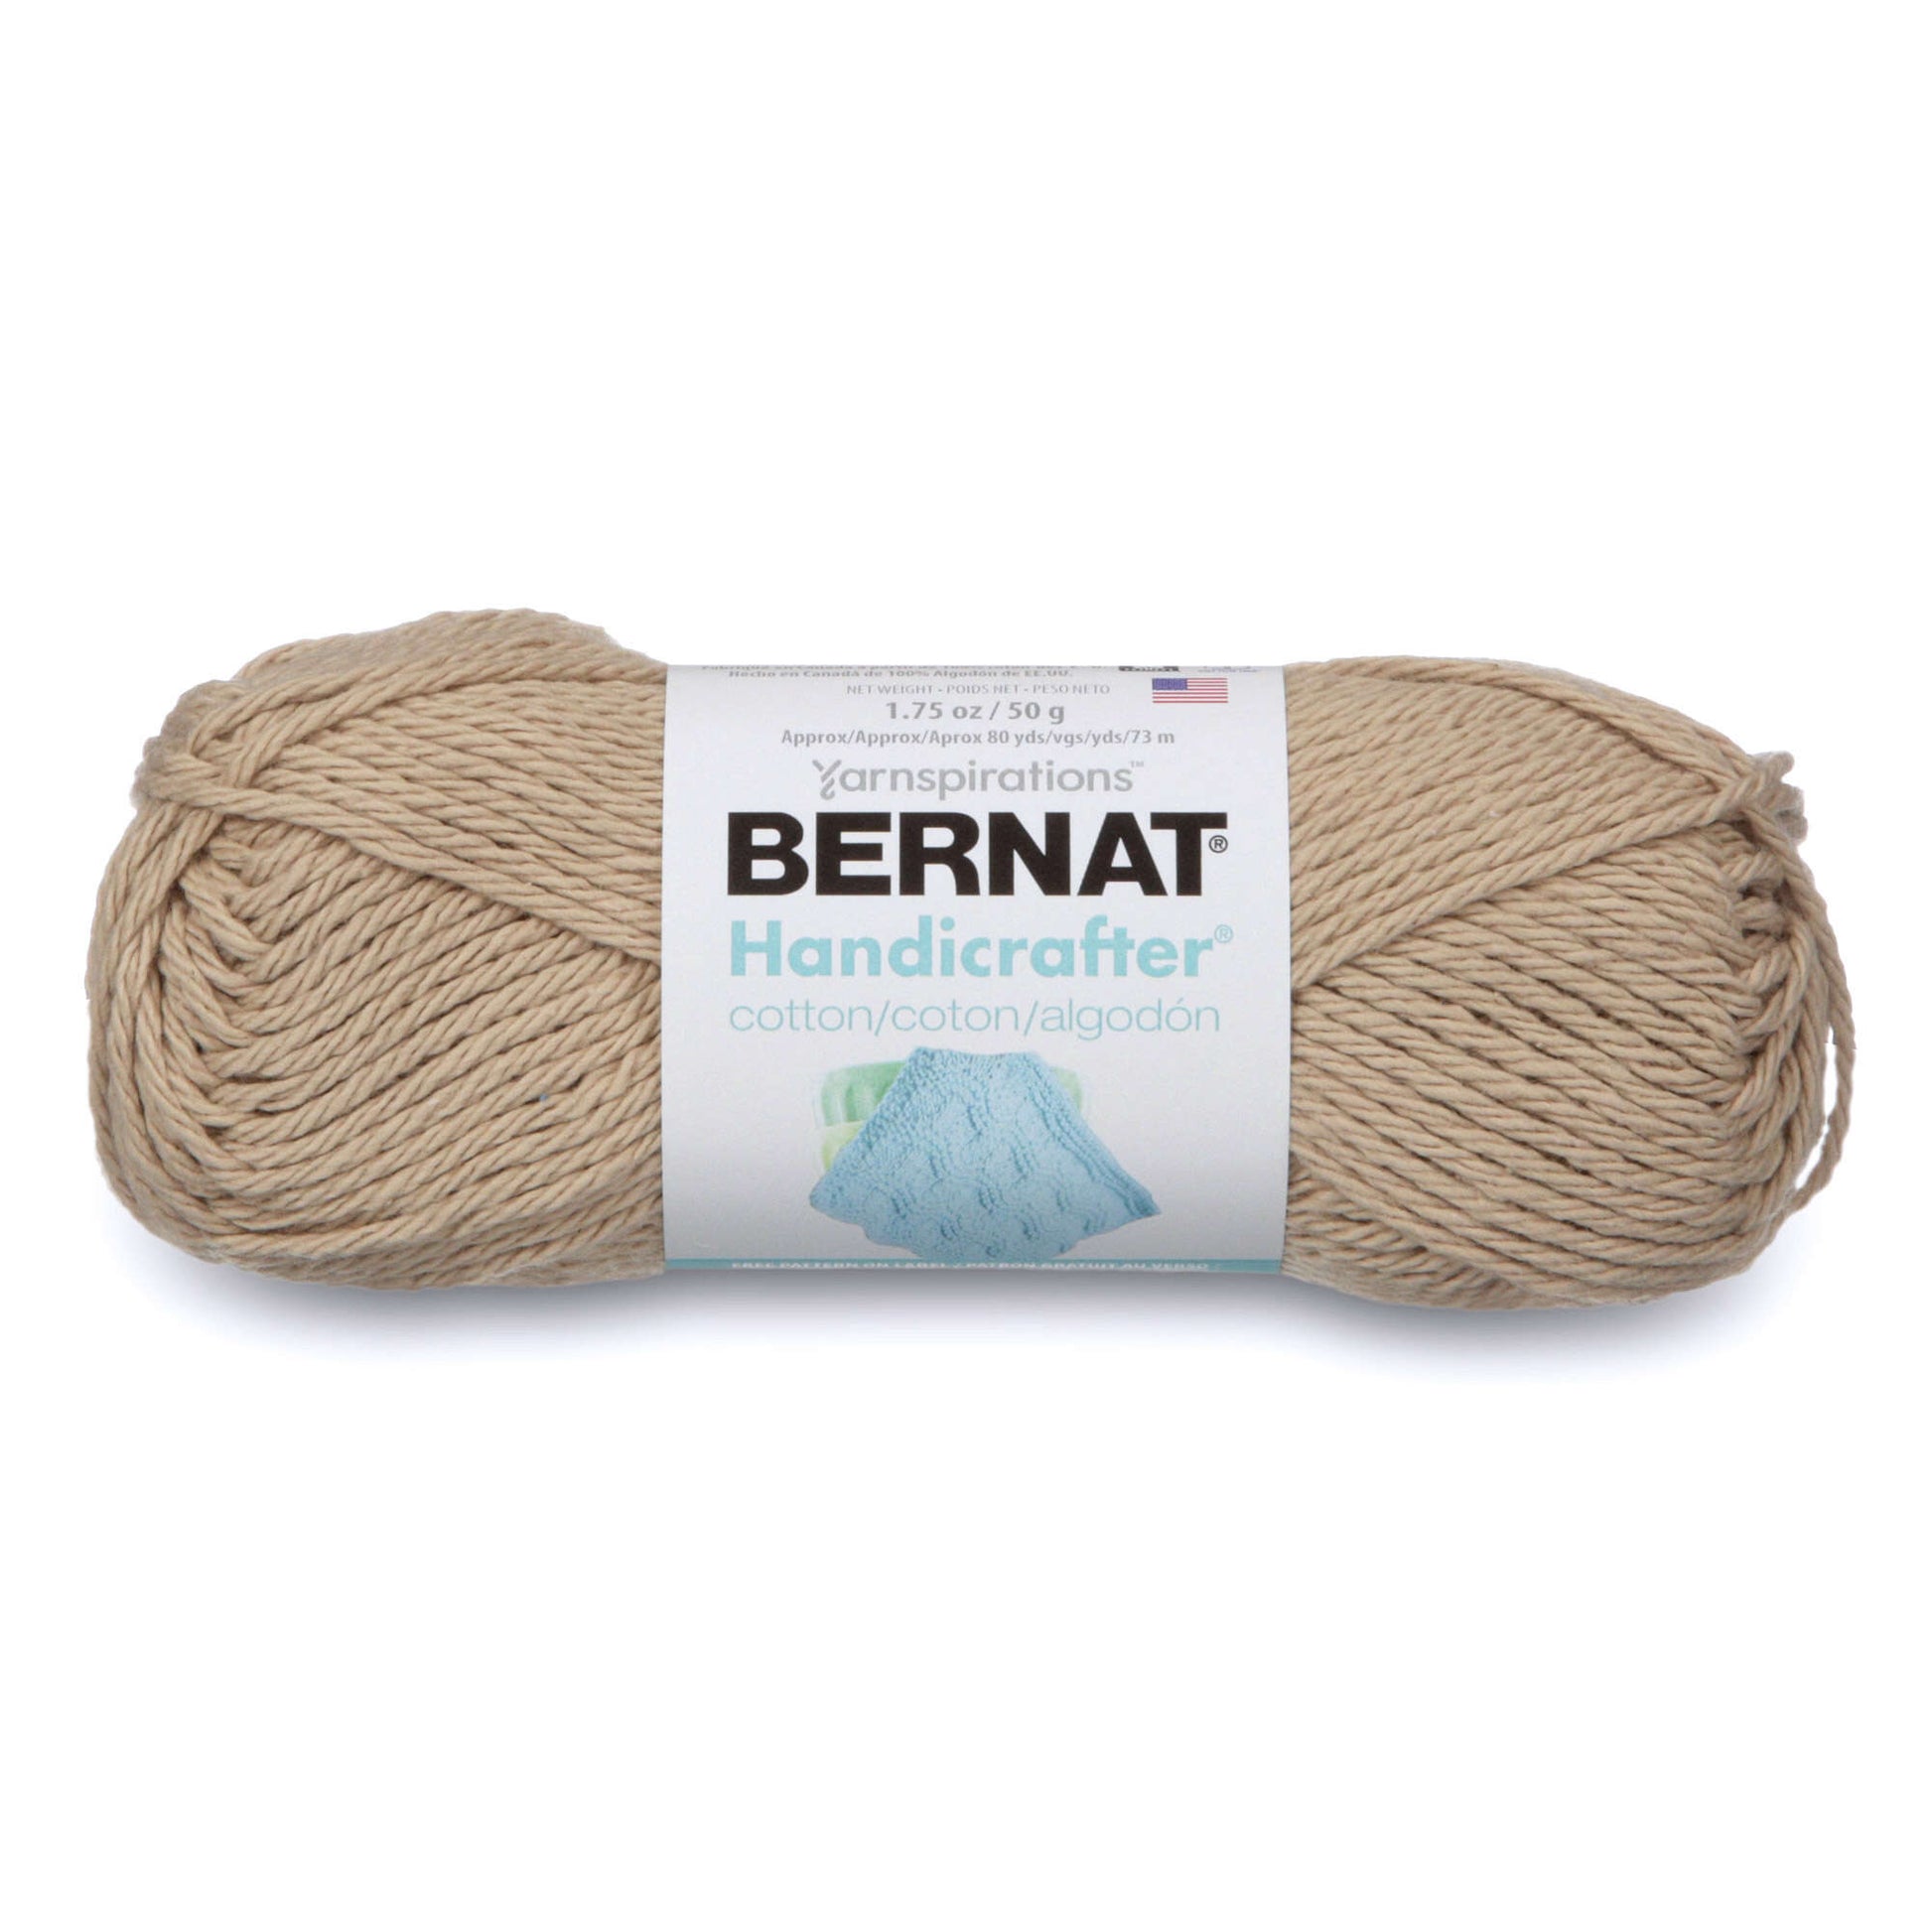 Bernat Handicrafter Cotton Yarn Jute